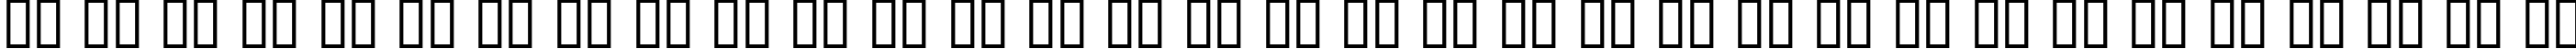 Пример написания русского алфавита шрифтом Dumbledor 3 Cut Up